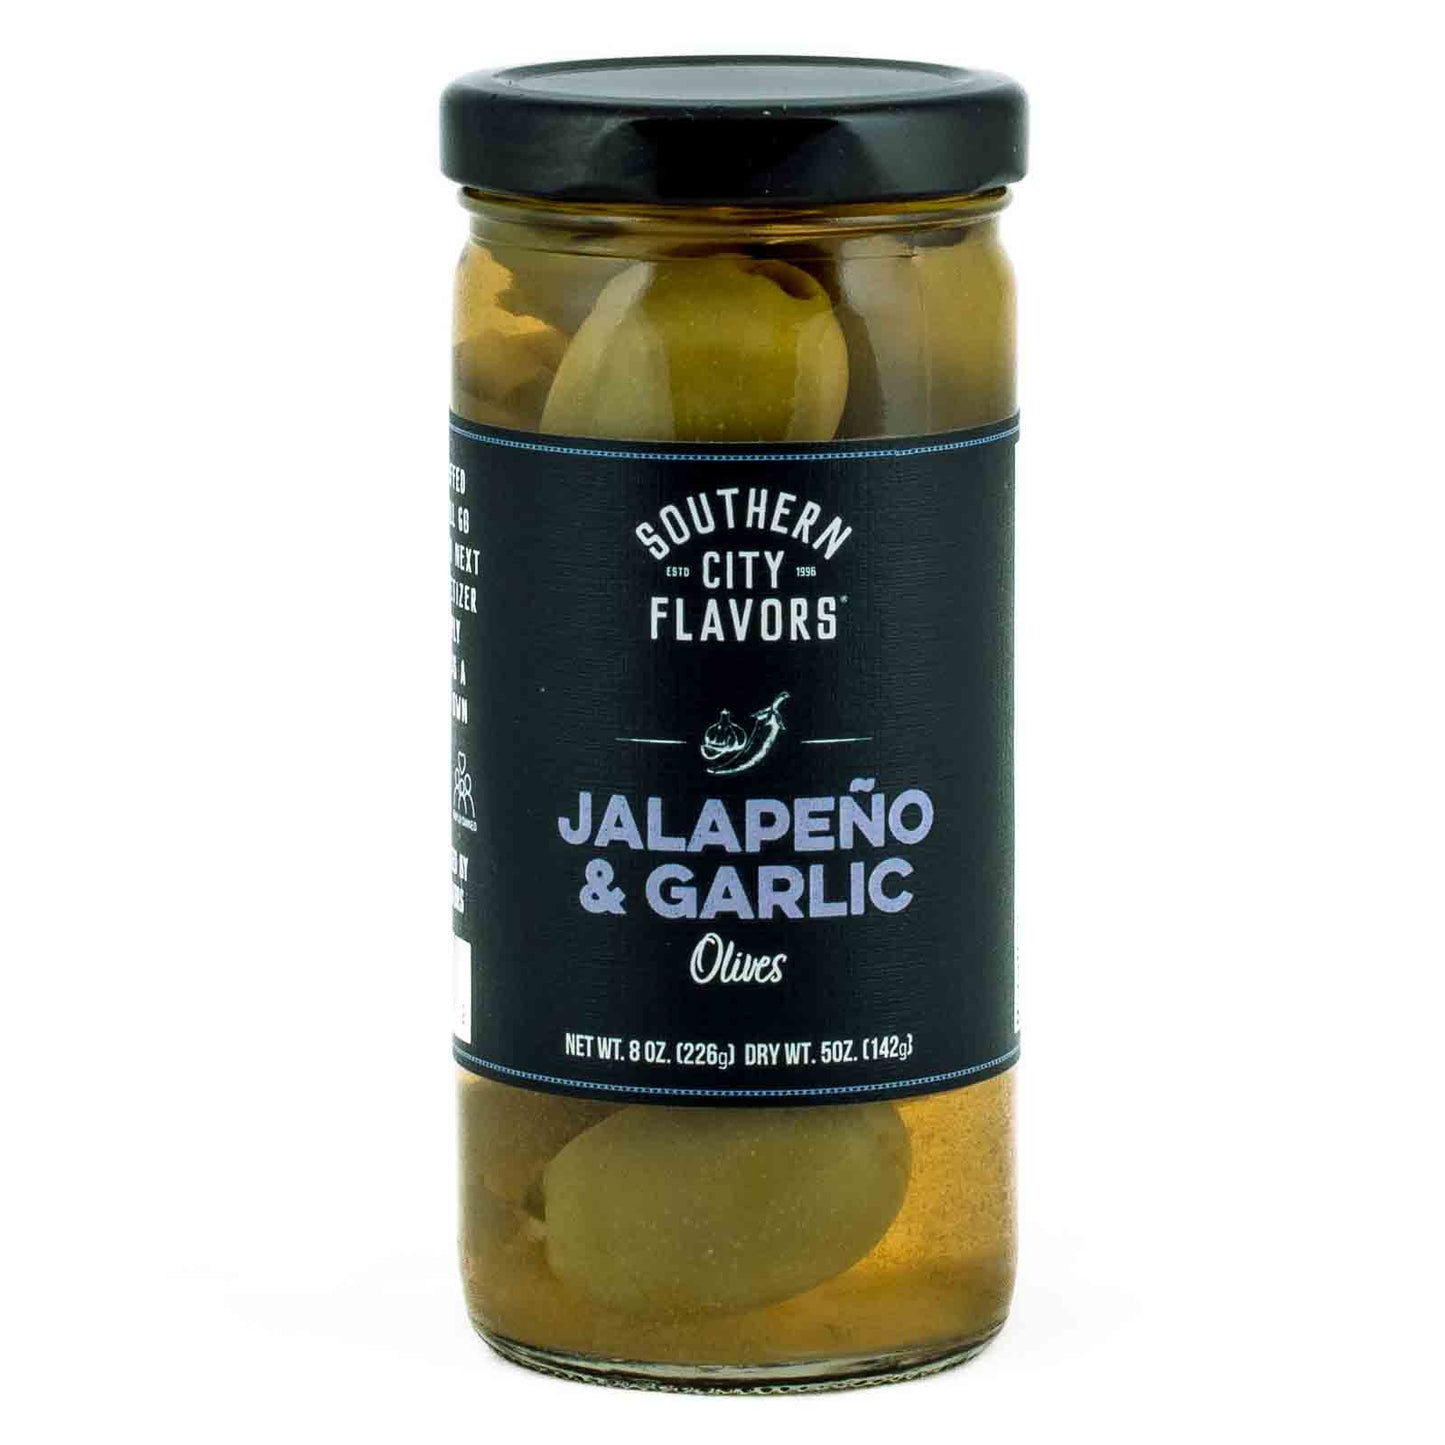 Garlic & Jalapeno Olives